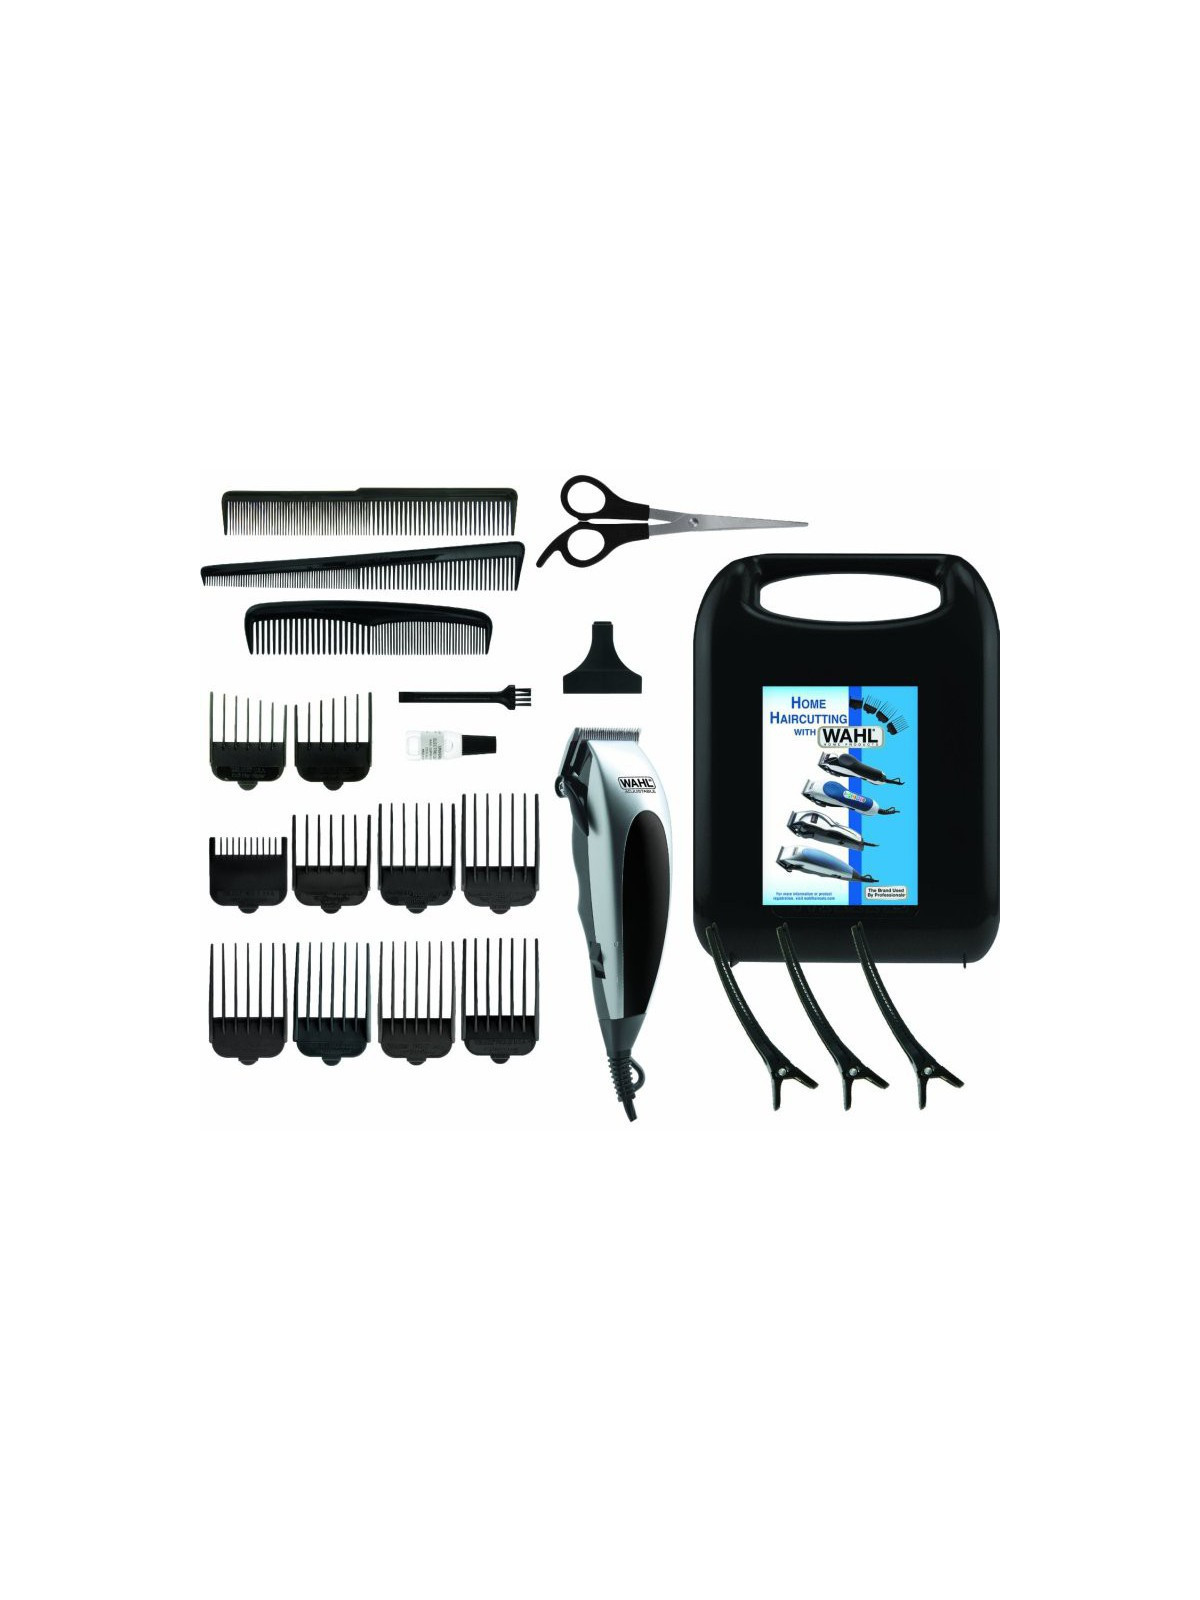 Plaukų kirpimo mašinėlė Wahl Home Pro Haircutting Kit